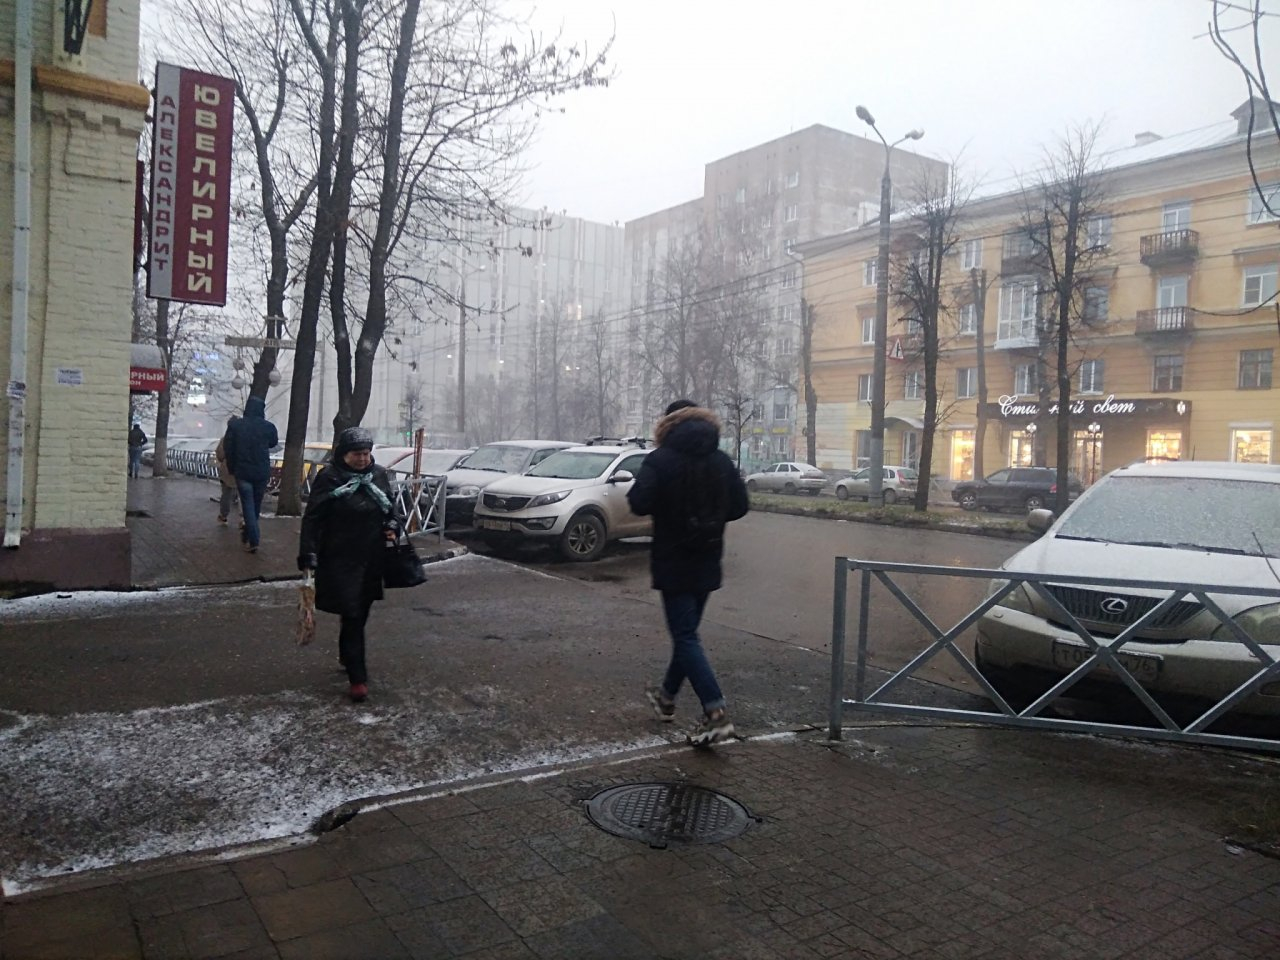 Метели, мокрый снег и ветер в Ярославле обещают синоптики